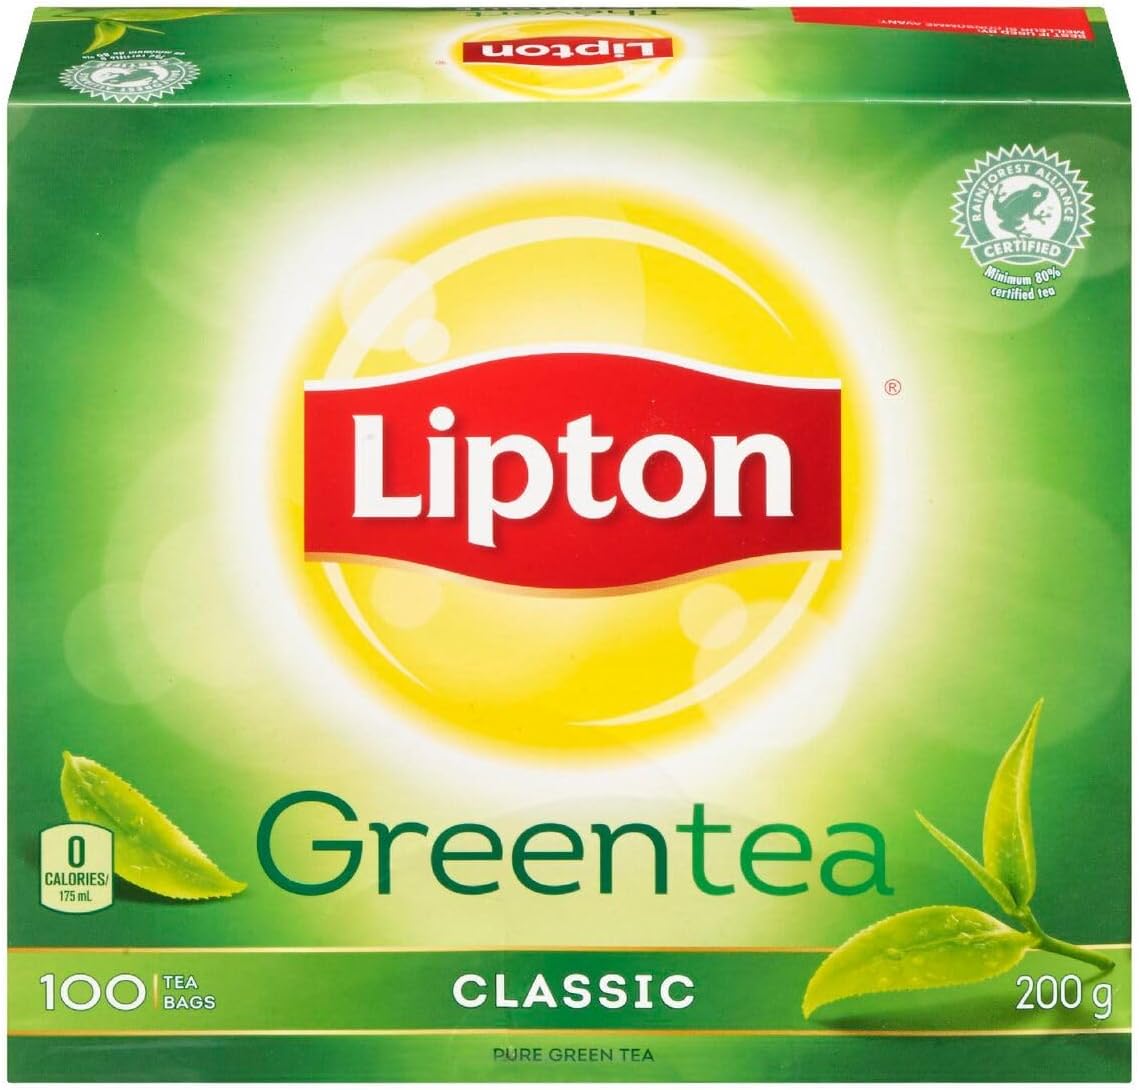 Lipton Green Tea, Rainforest Alliance C...